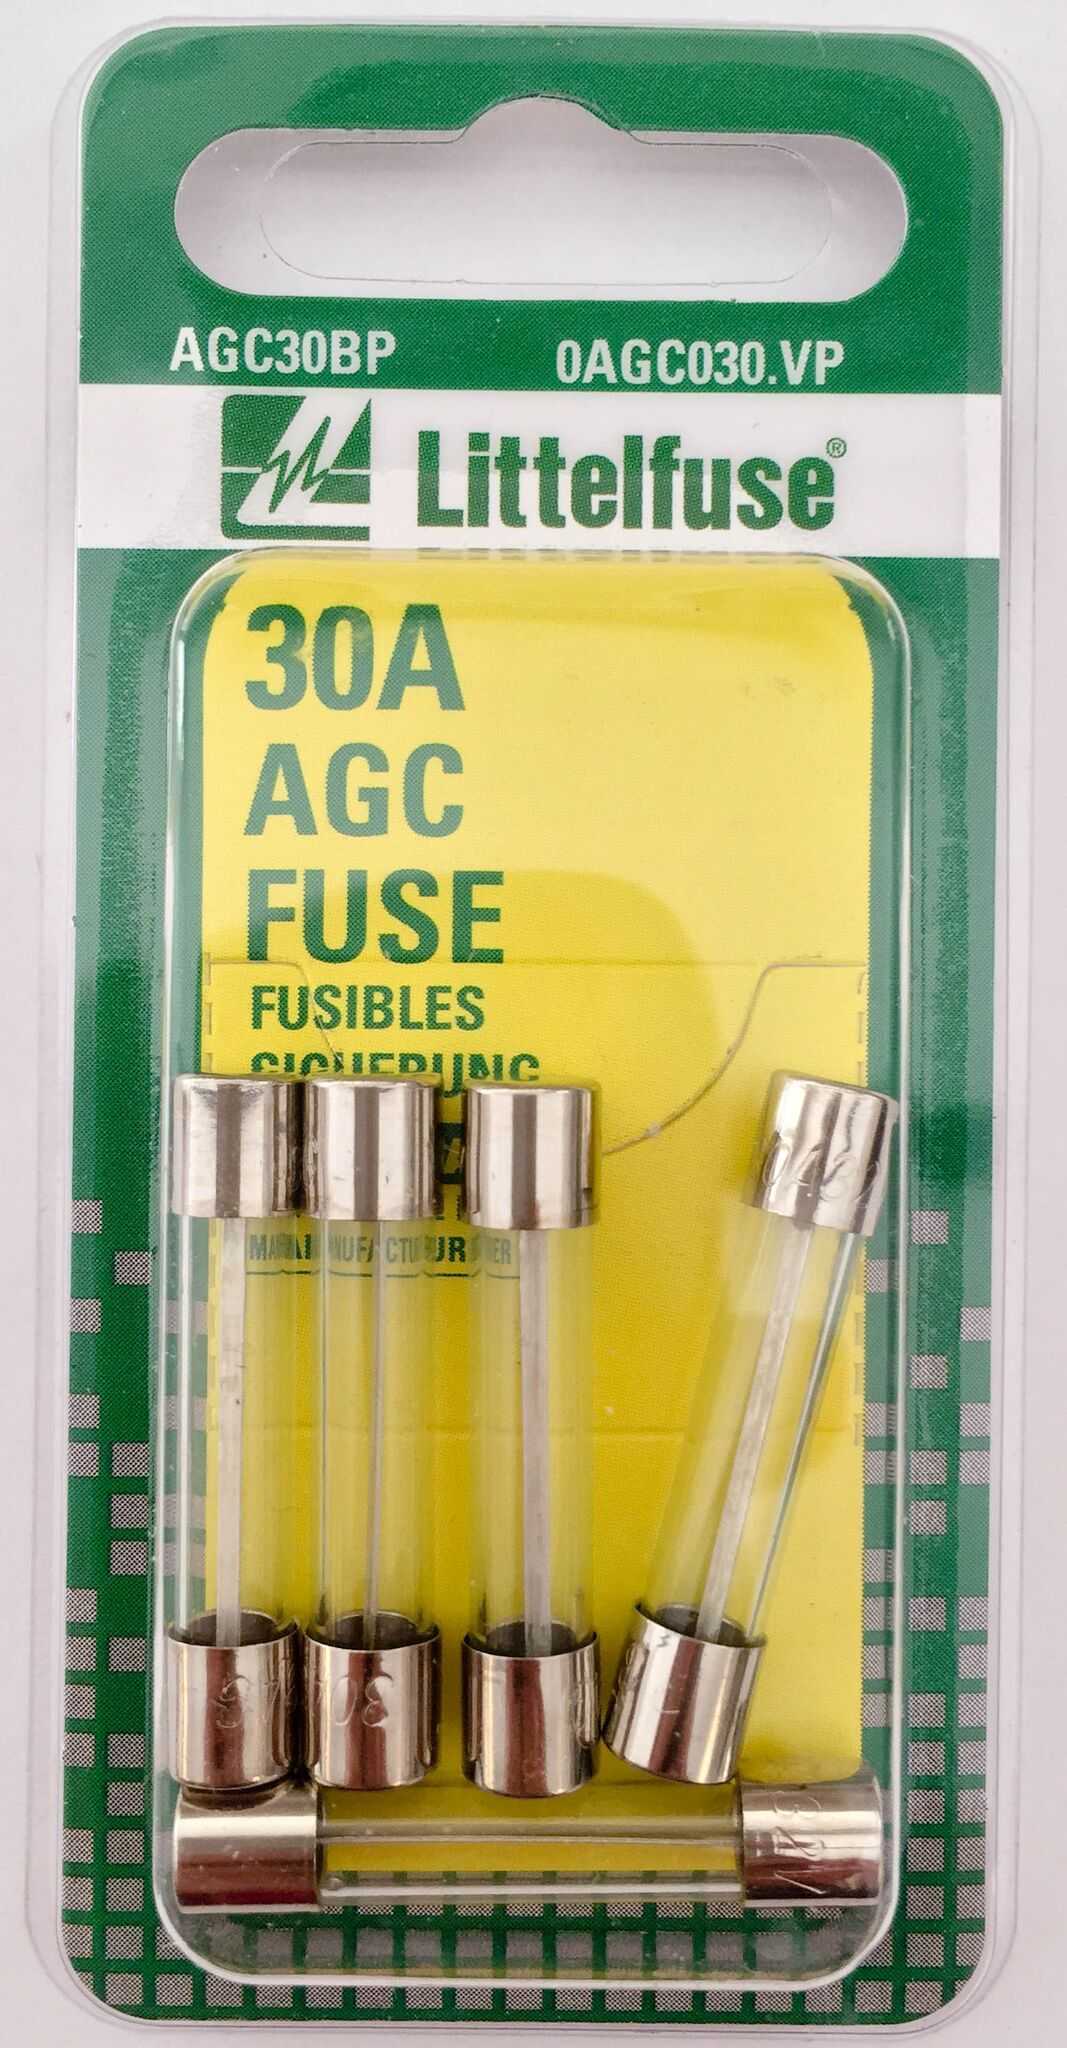 AGC30BP Fuse